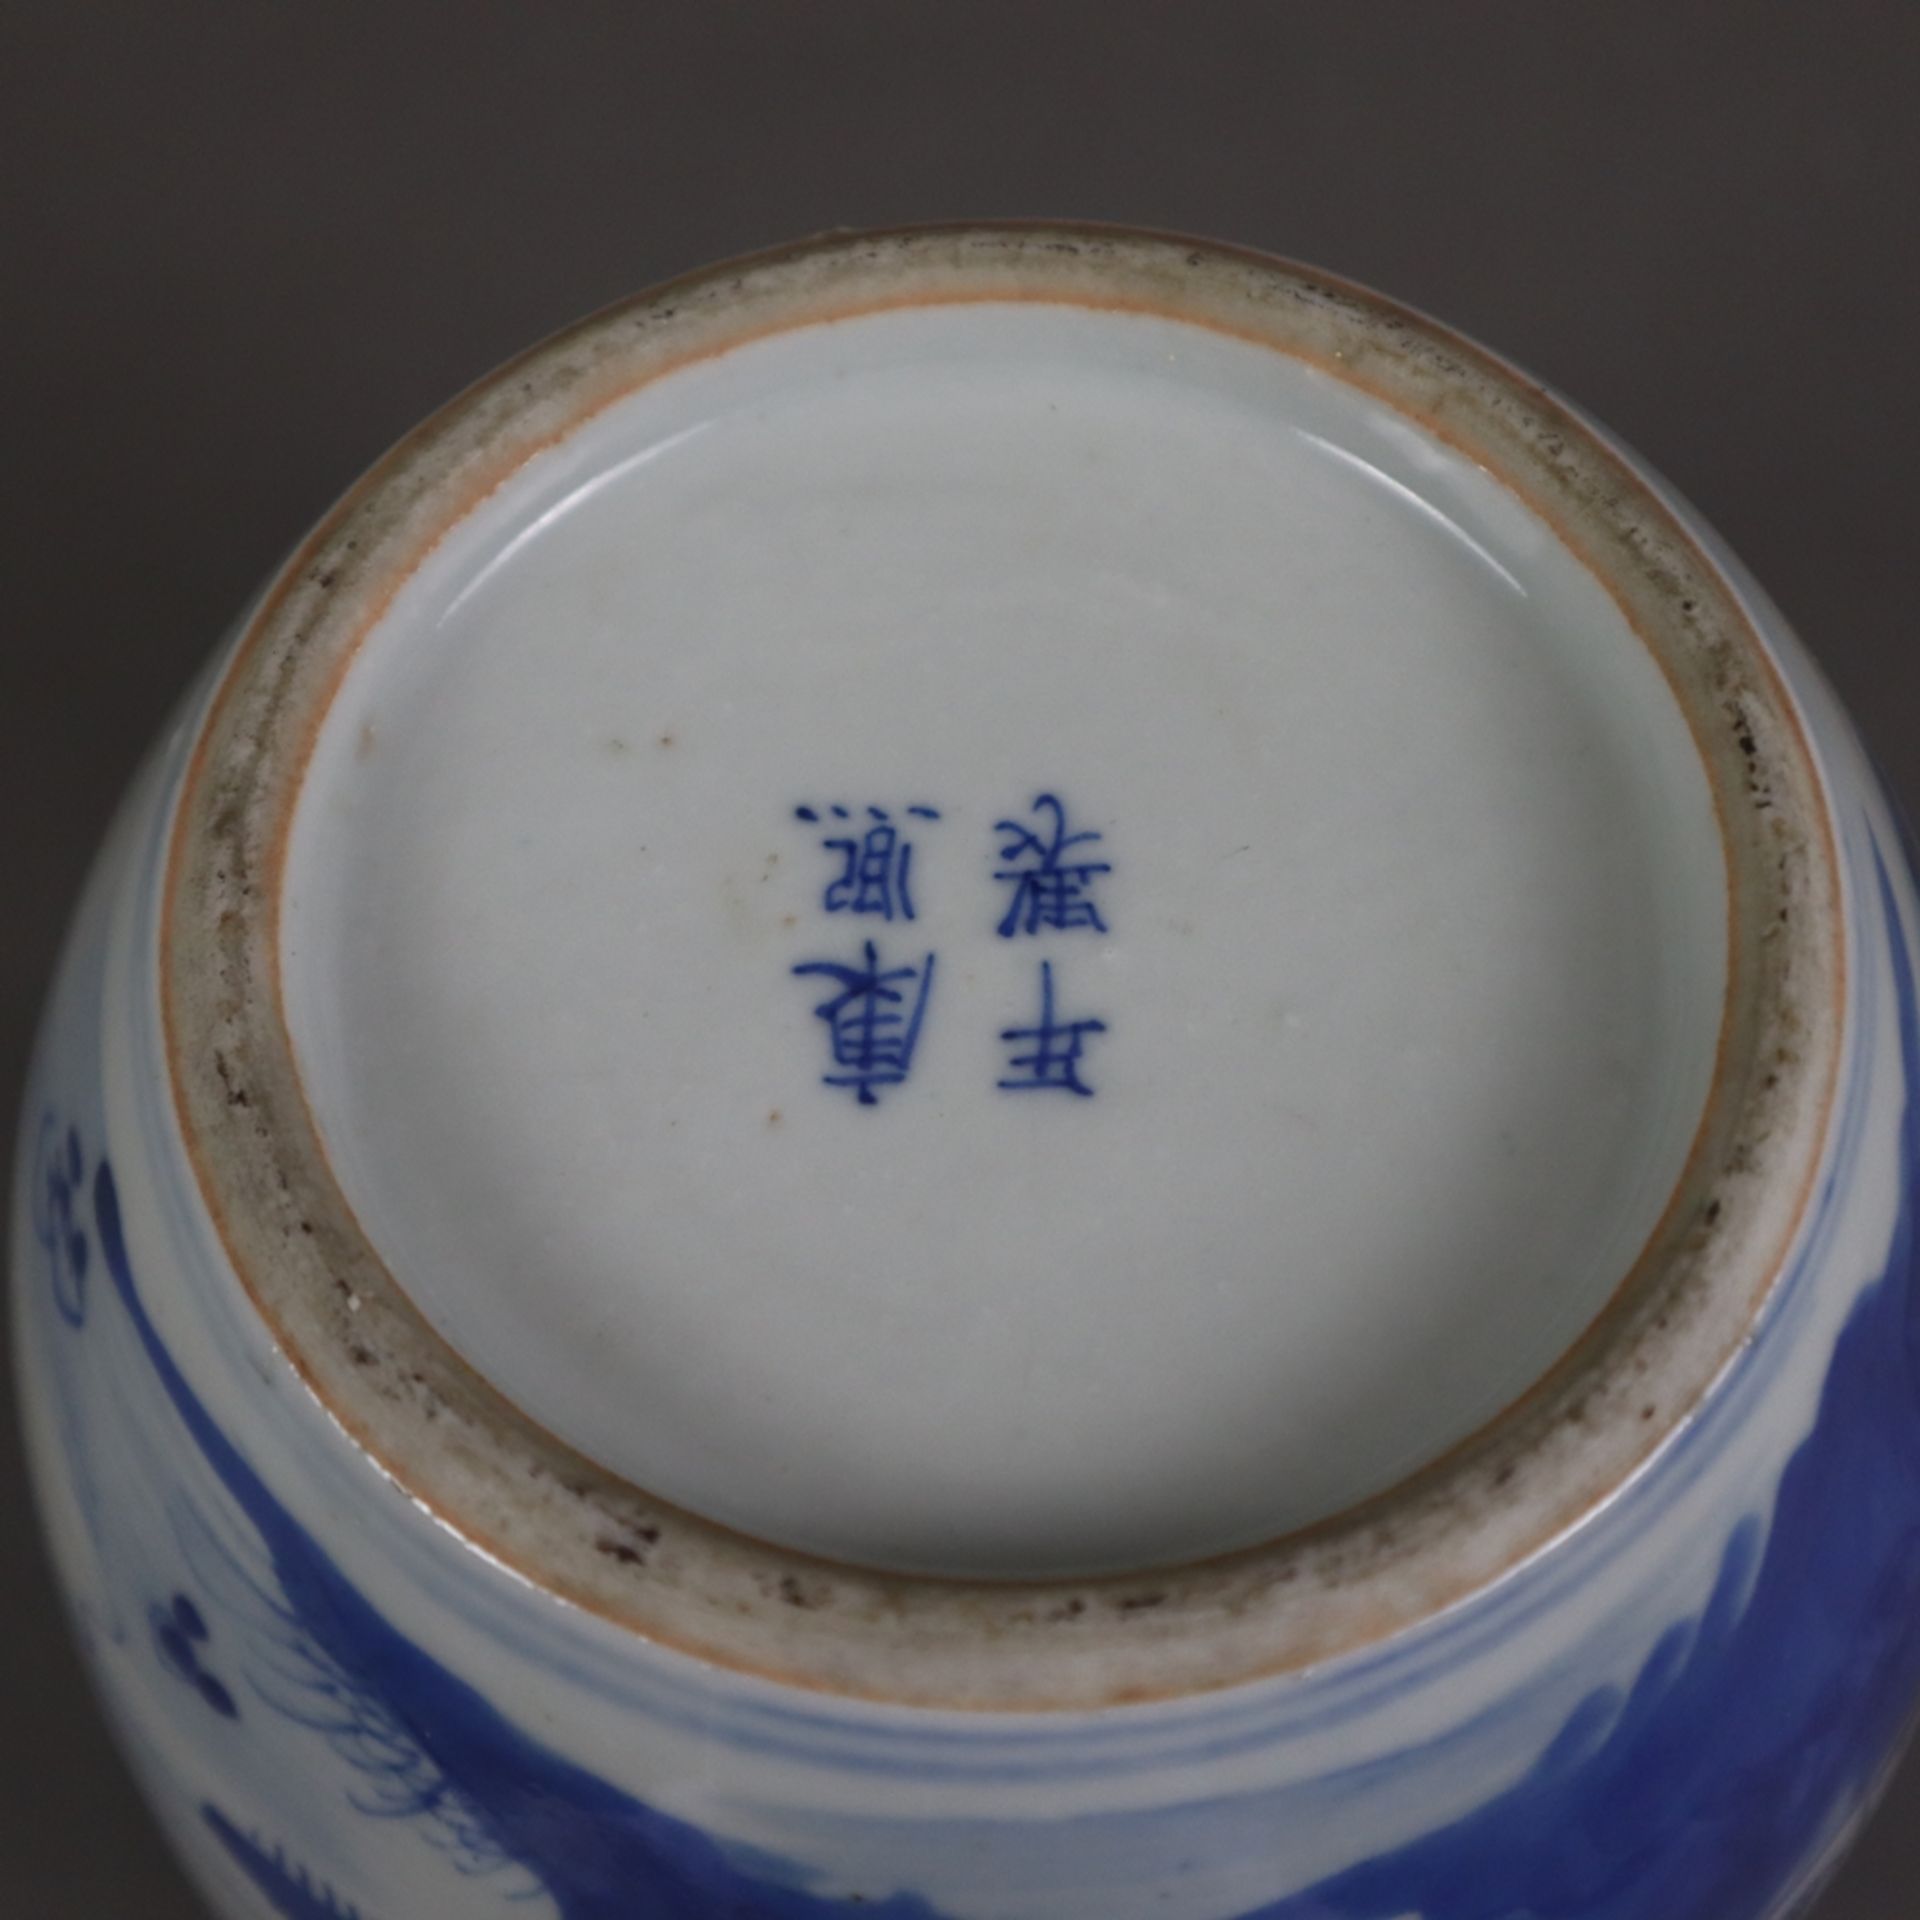 Kleiner Blau-Weiß-Deckeltopf - China, späte Qing-Dynastie, Porzellan, auf der Wandung Shan-Shui-Lan - Bild 9 aus 10